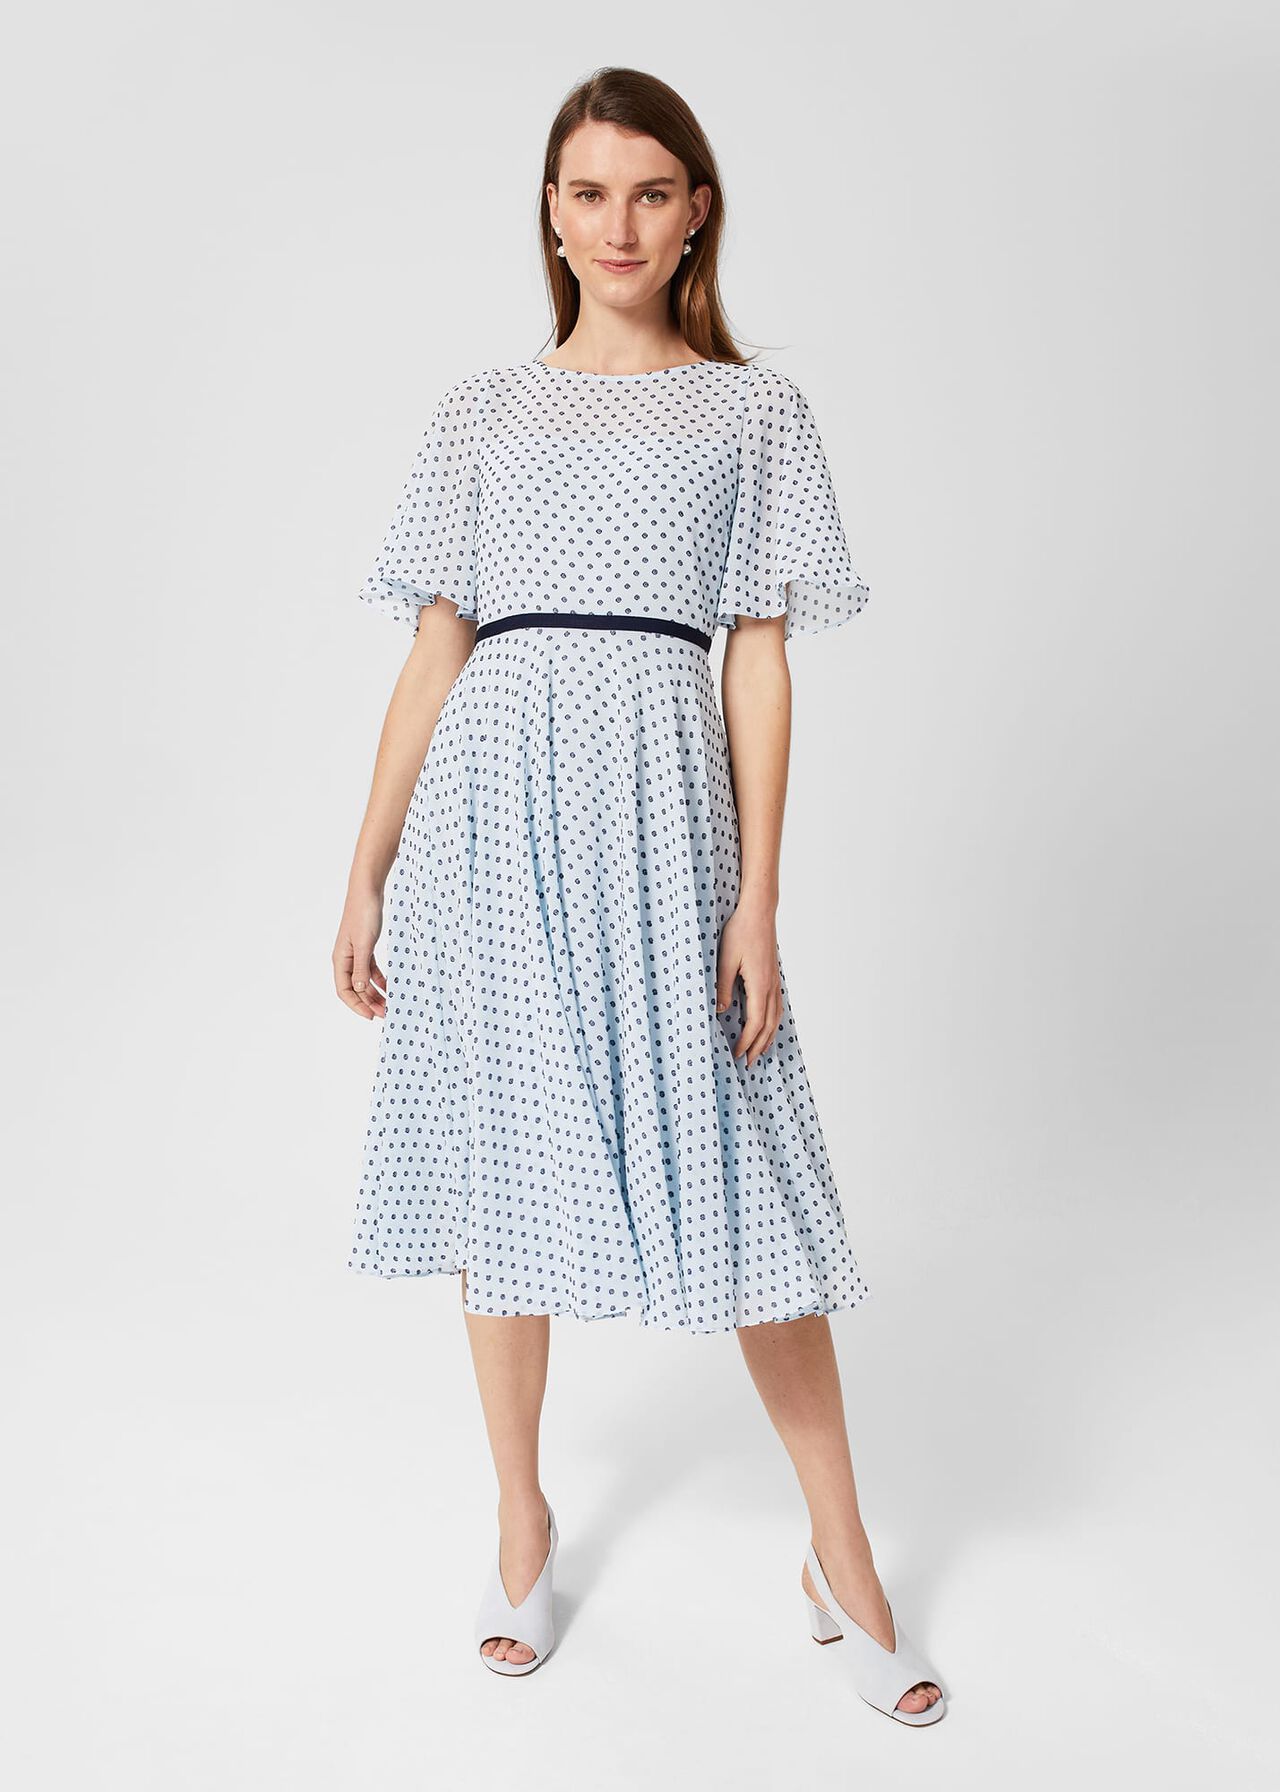 Petite Eleanor Spot Dress, Pale Blue Navy, hi-res